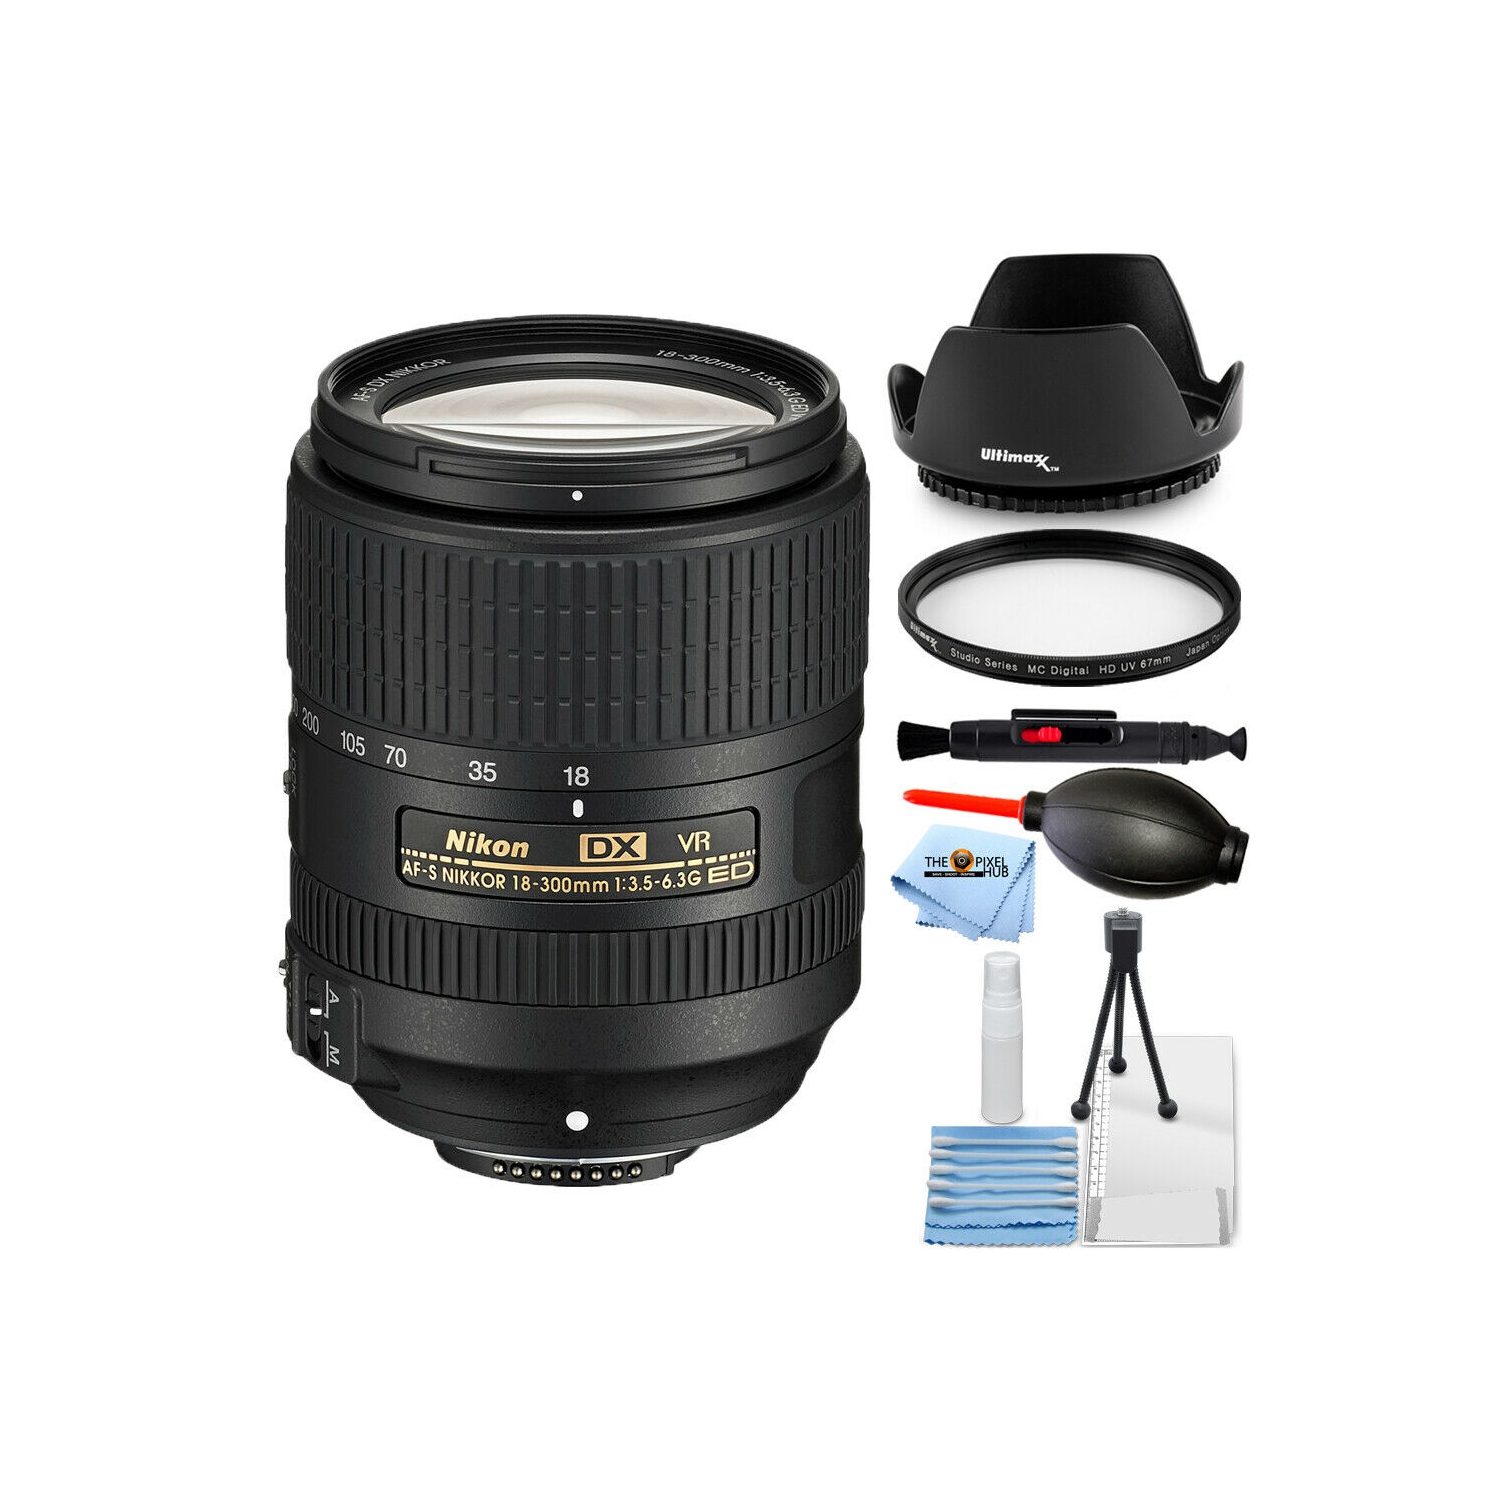 Nikon AF-S DX NIKKOR 18-300mm f/3.5-6.3G ED VR Lens 2216 - 7PC Accessory Bundle